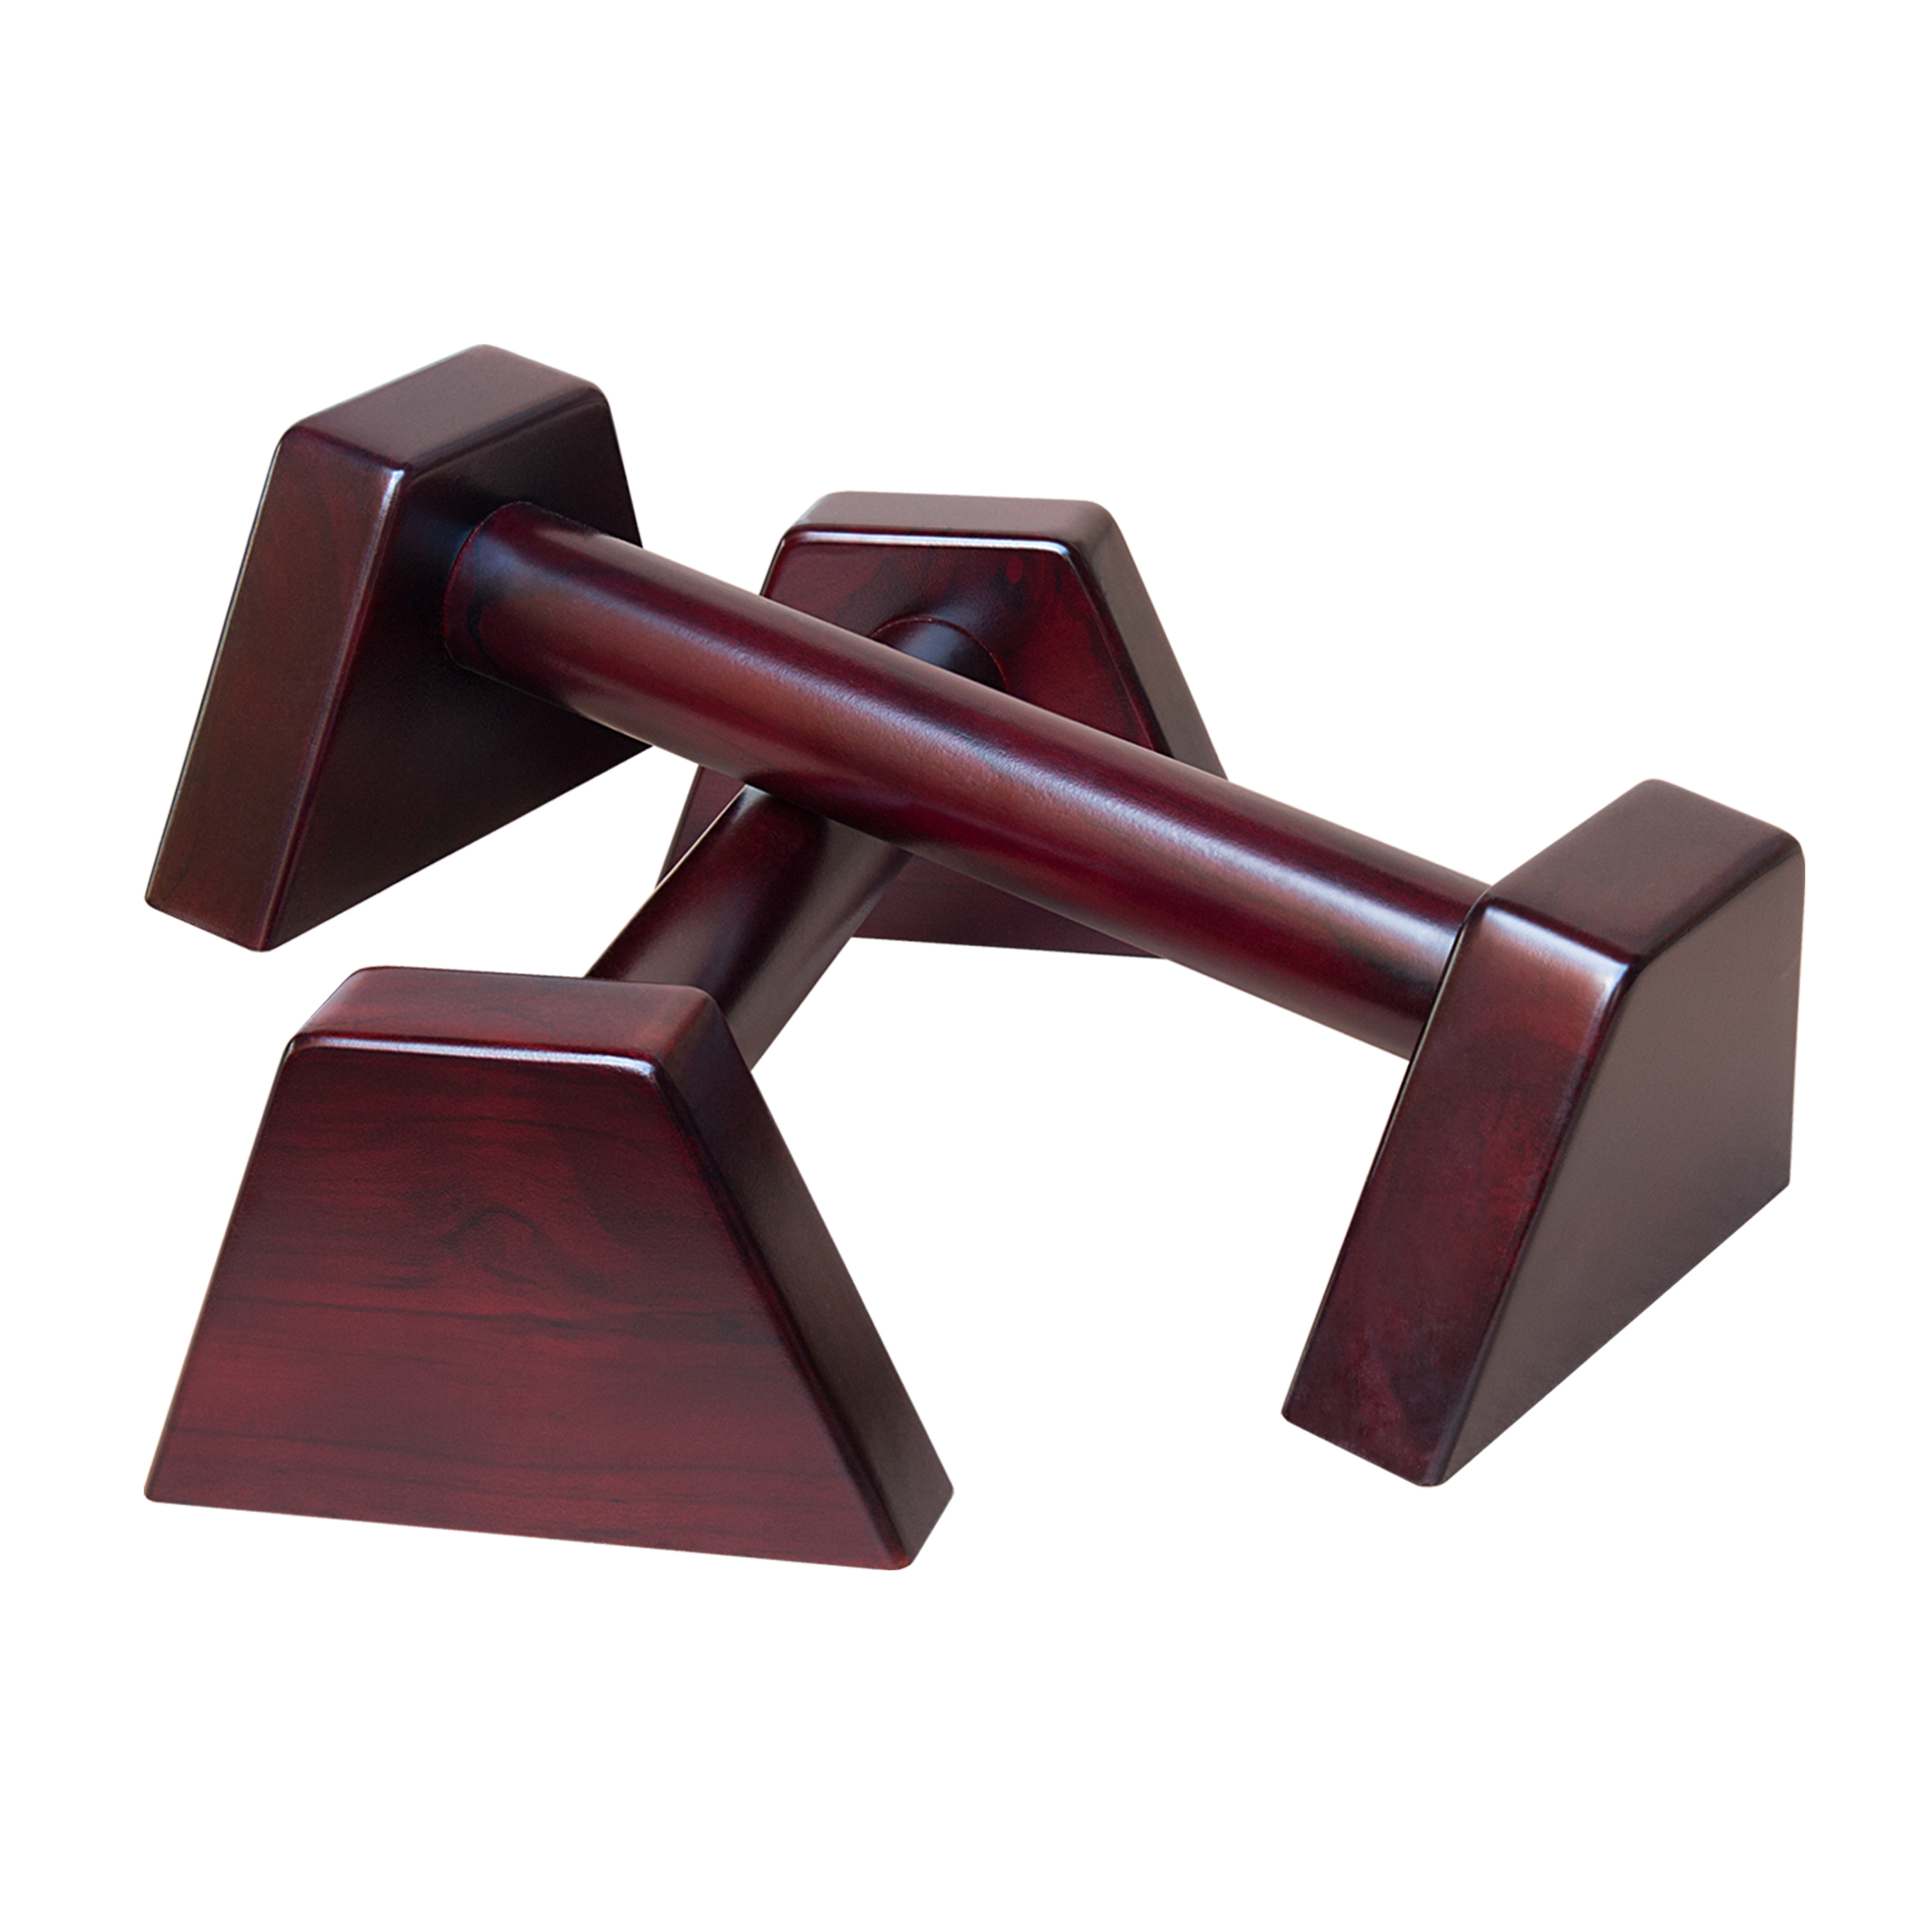 Dụng cụ chống đẩy, hít đất bằng gỗ - Parallettes Handstand PAH-05A